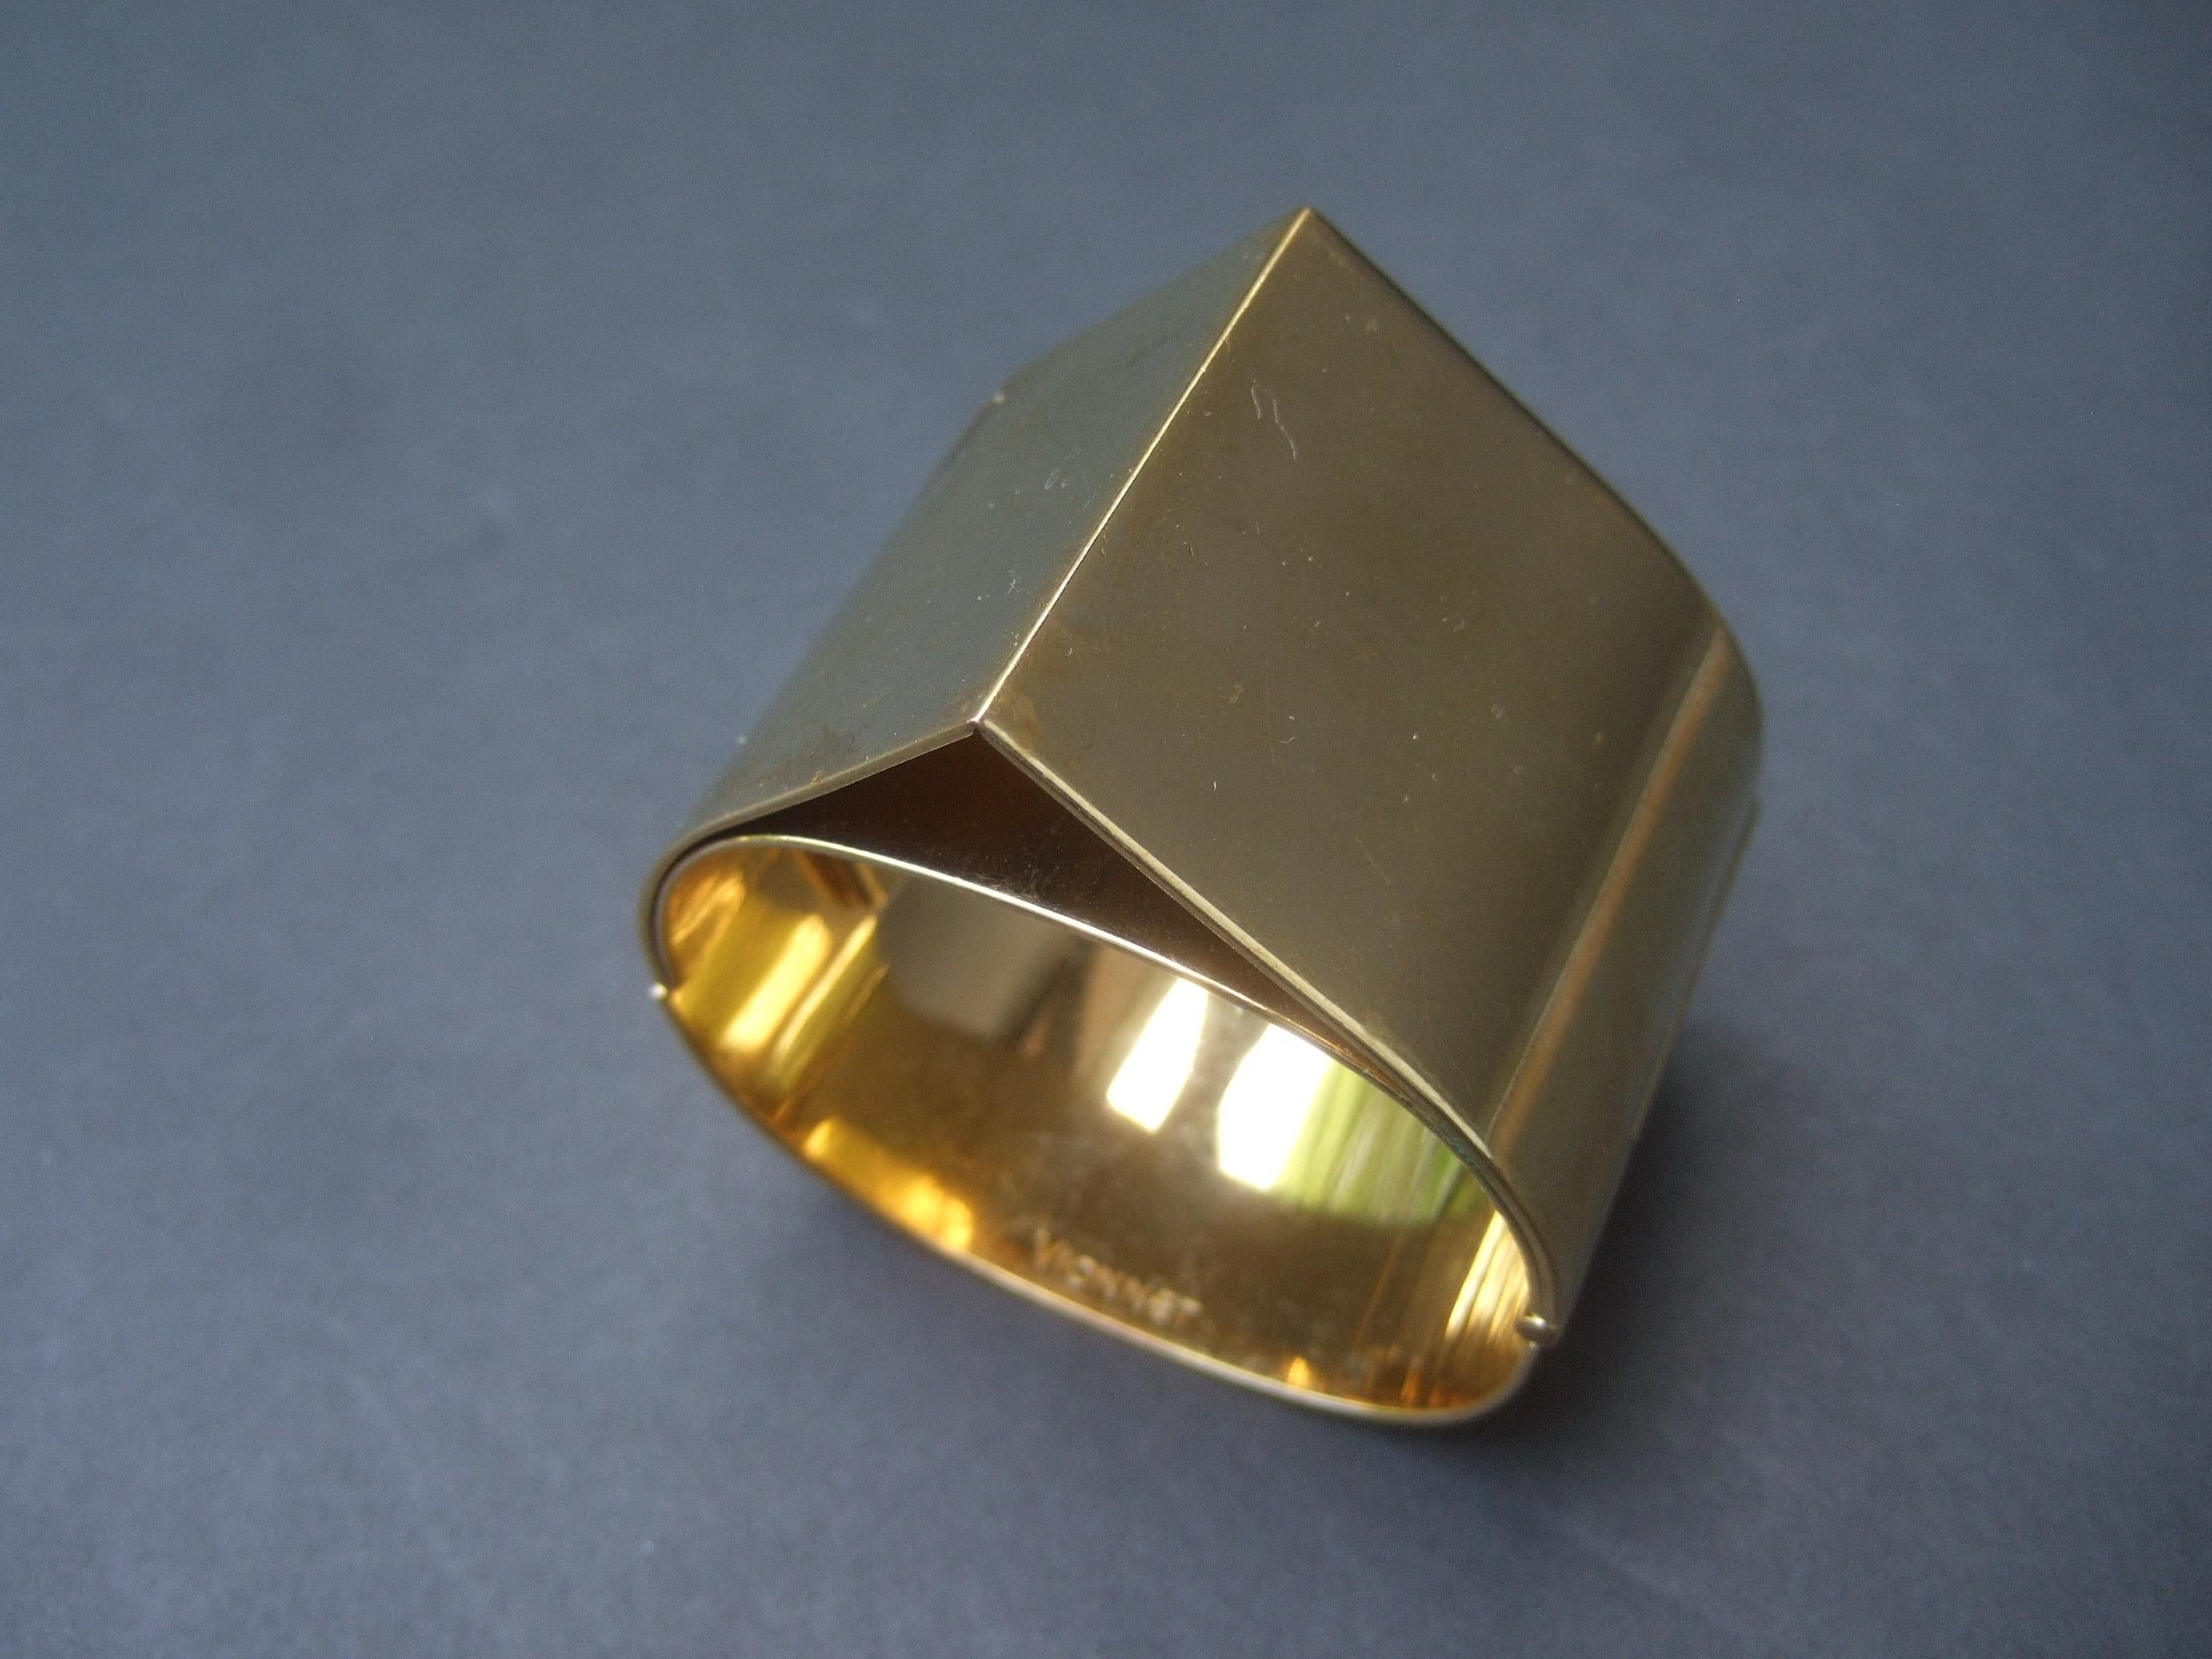 Vionnet - Bracelet large et élégant en métal doré avec charnière - années 1990
La manchette large et sévère est conçue avec une pointe pyramidale triangulaire qui converge au centre

Un accessoire très chic qui attire l'attention 
La bande